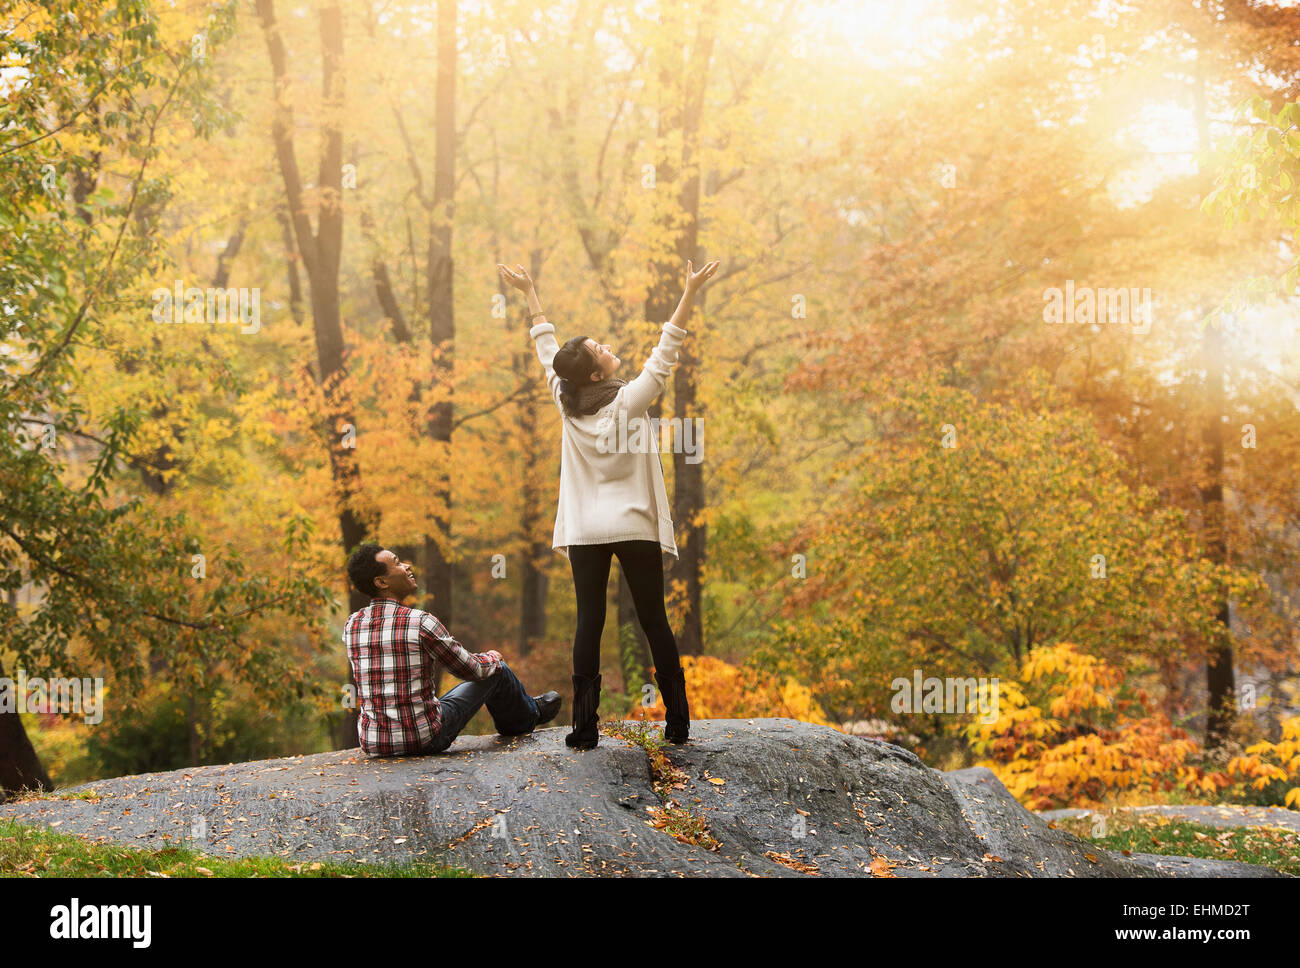 Woman cheering with arms outstretched près de petit ami en park Banque D'Images